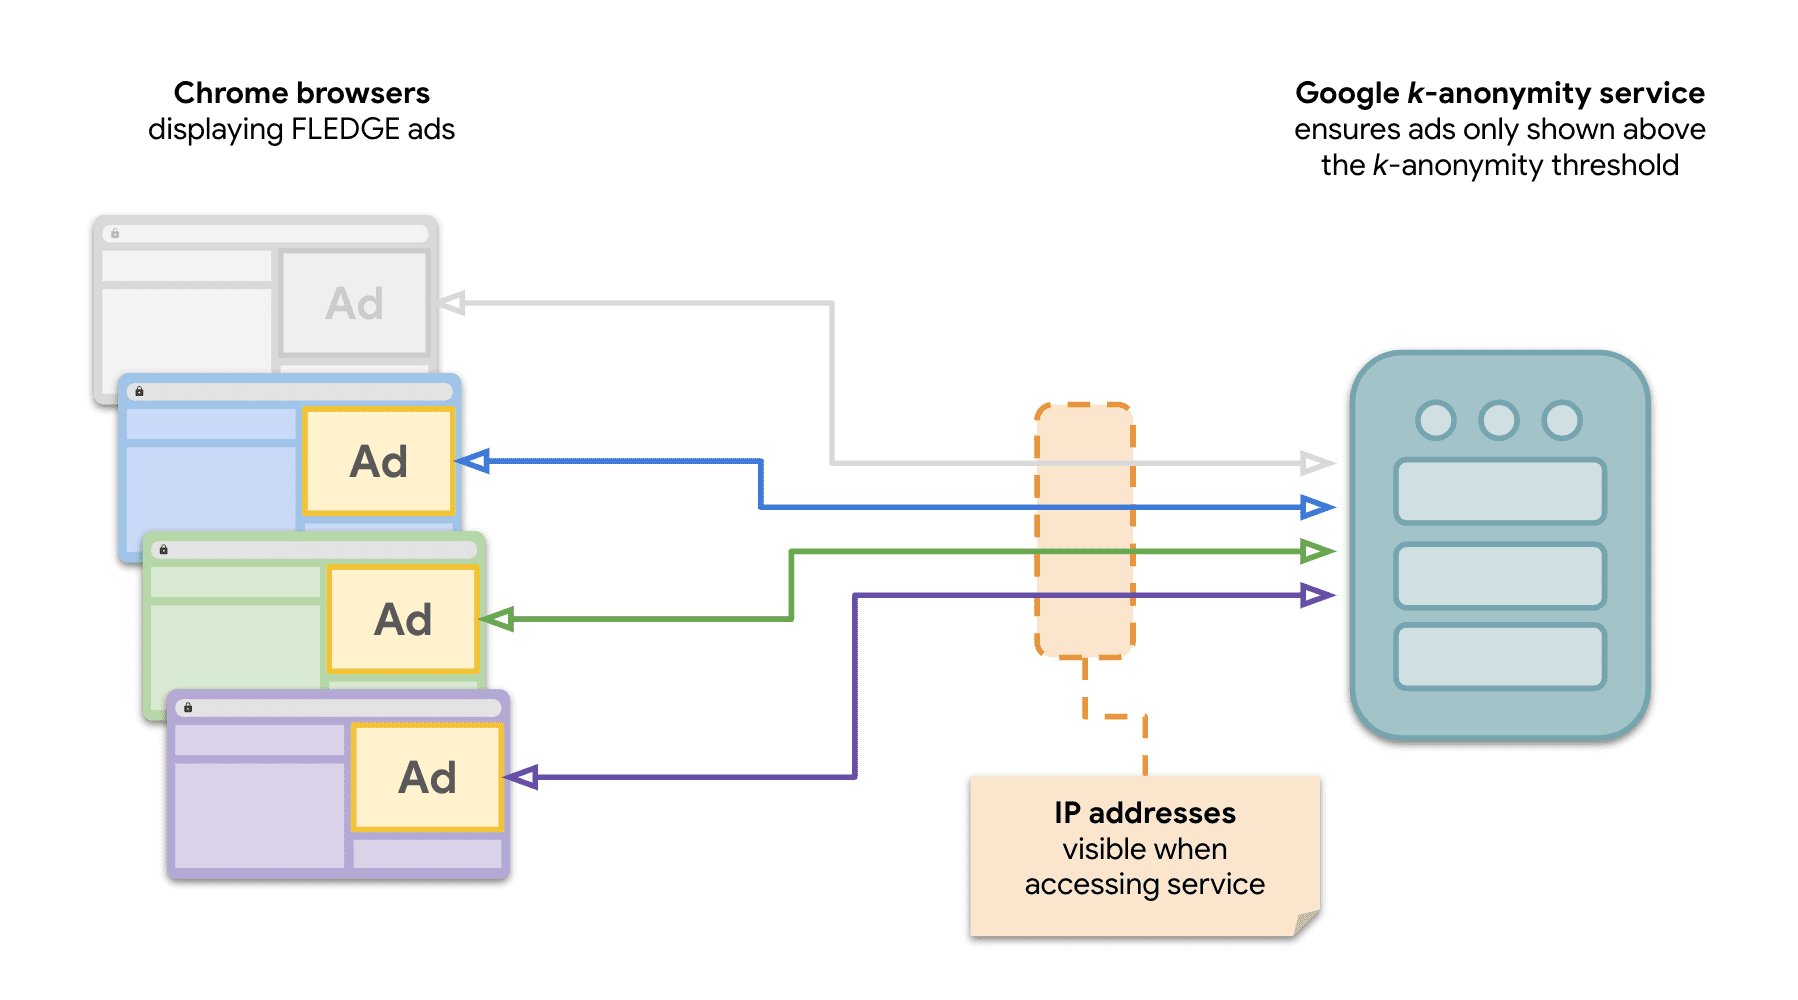 Een diagram dat laat zien dat meerdere sites in Chrome verzoeken naar de 𝑘-anonimiteitsserver sturen om FLEDGE-advertenties weer te geven.